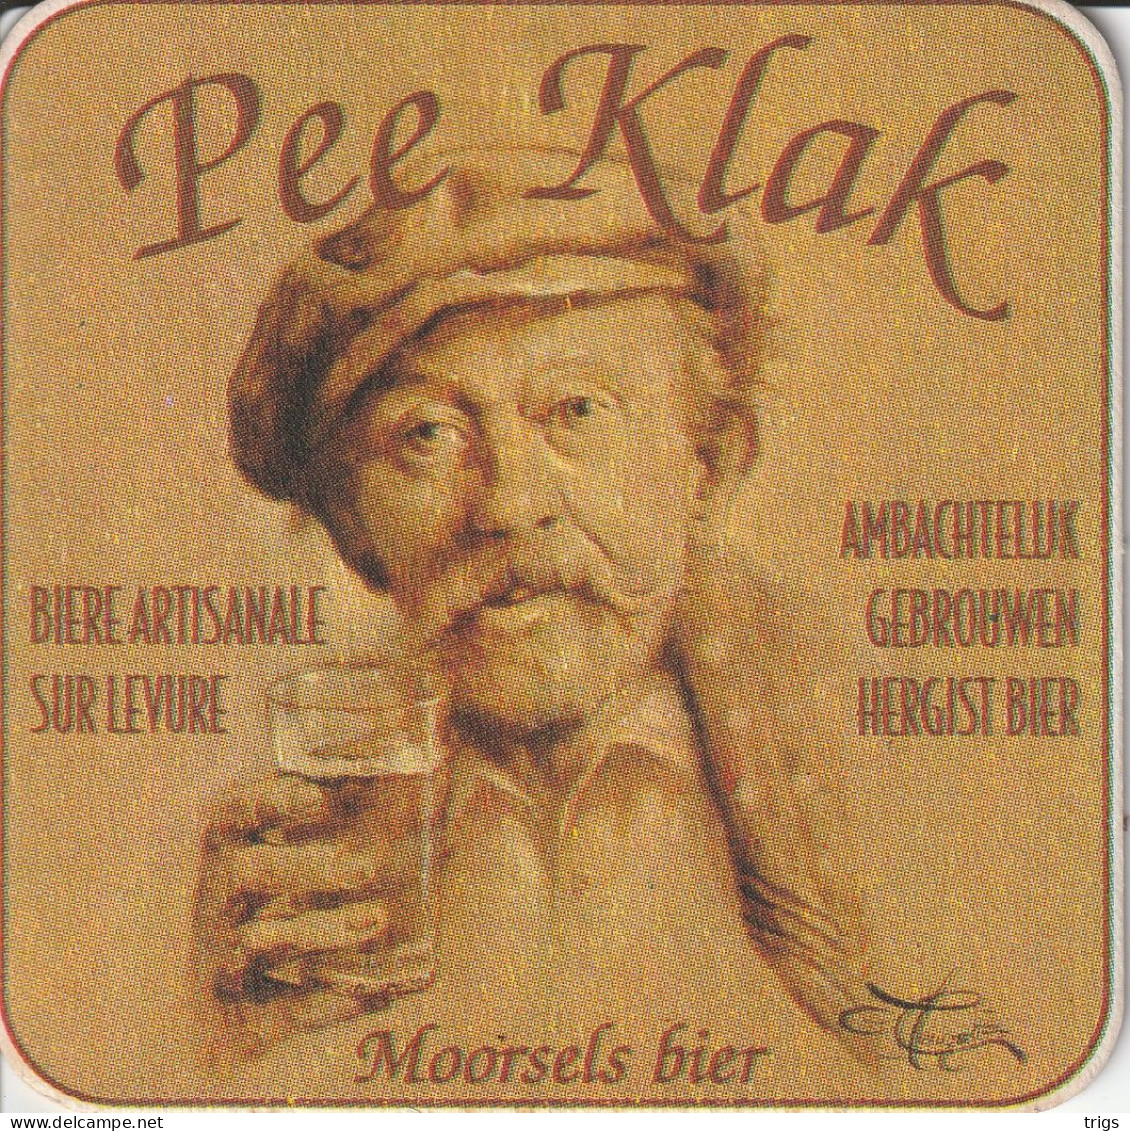 Pee Klak - Sotto-boccale